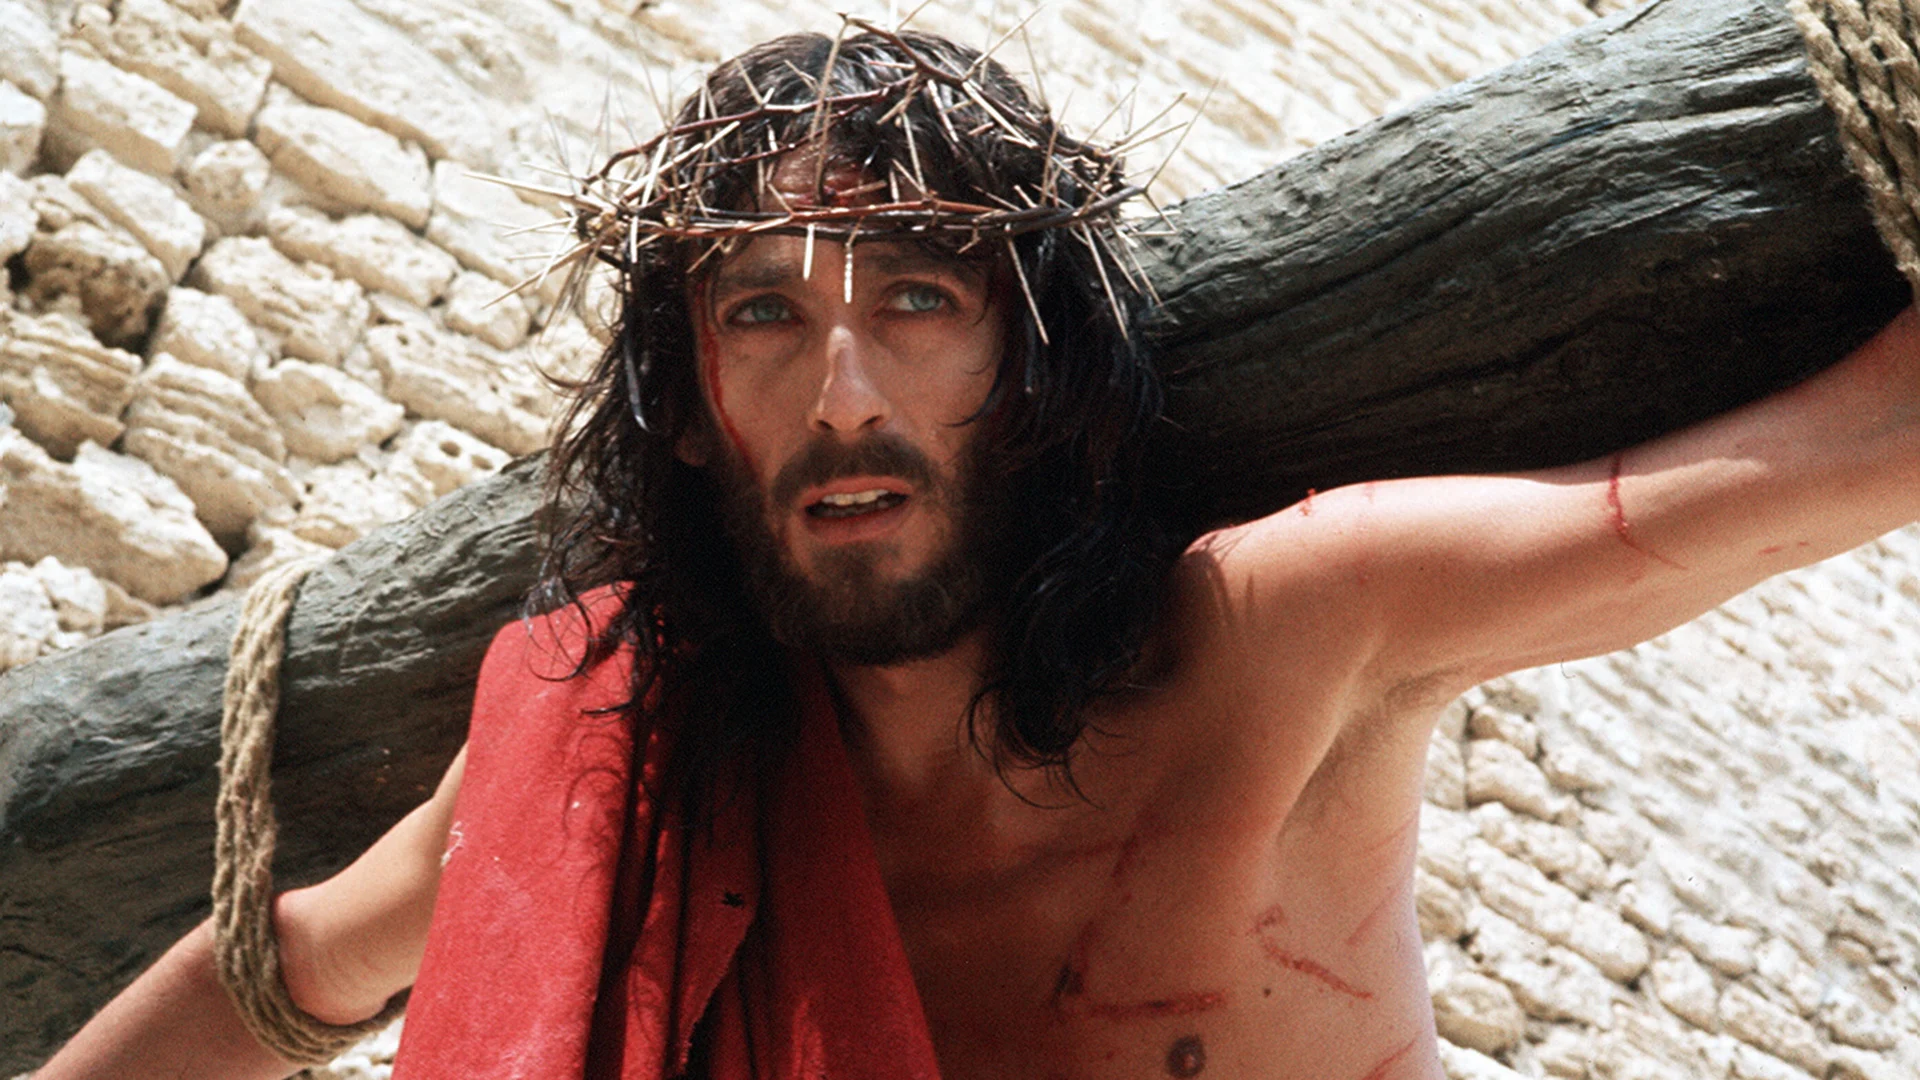 Θεωρήθηκαν βλάσφημες: Οι τρεις ταινίες για το Χριστό που προκάλεσαν σφοδρές αντιδράσεις